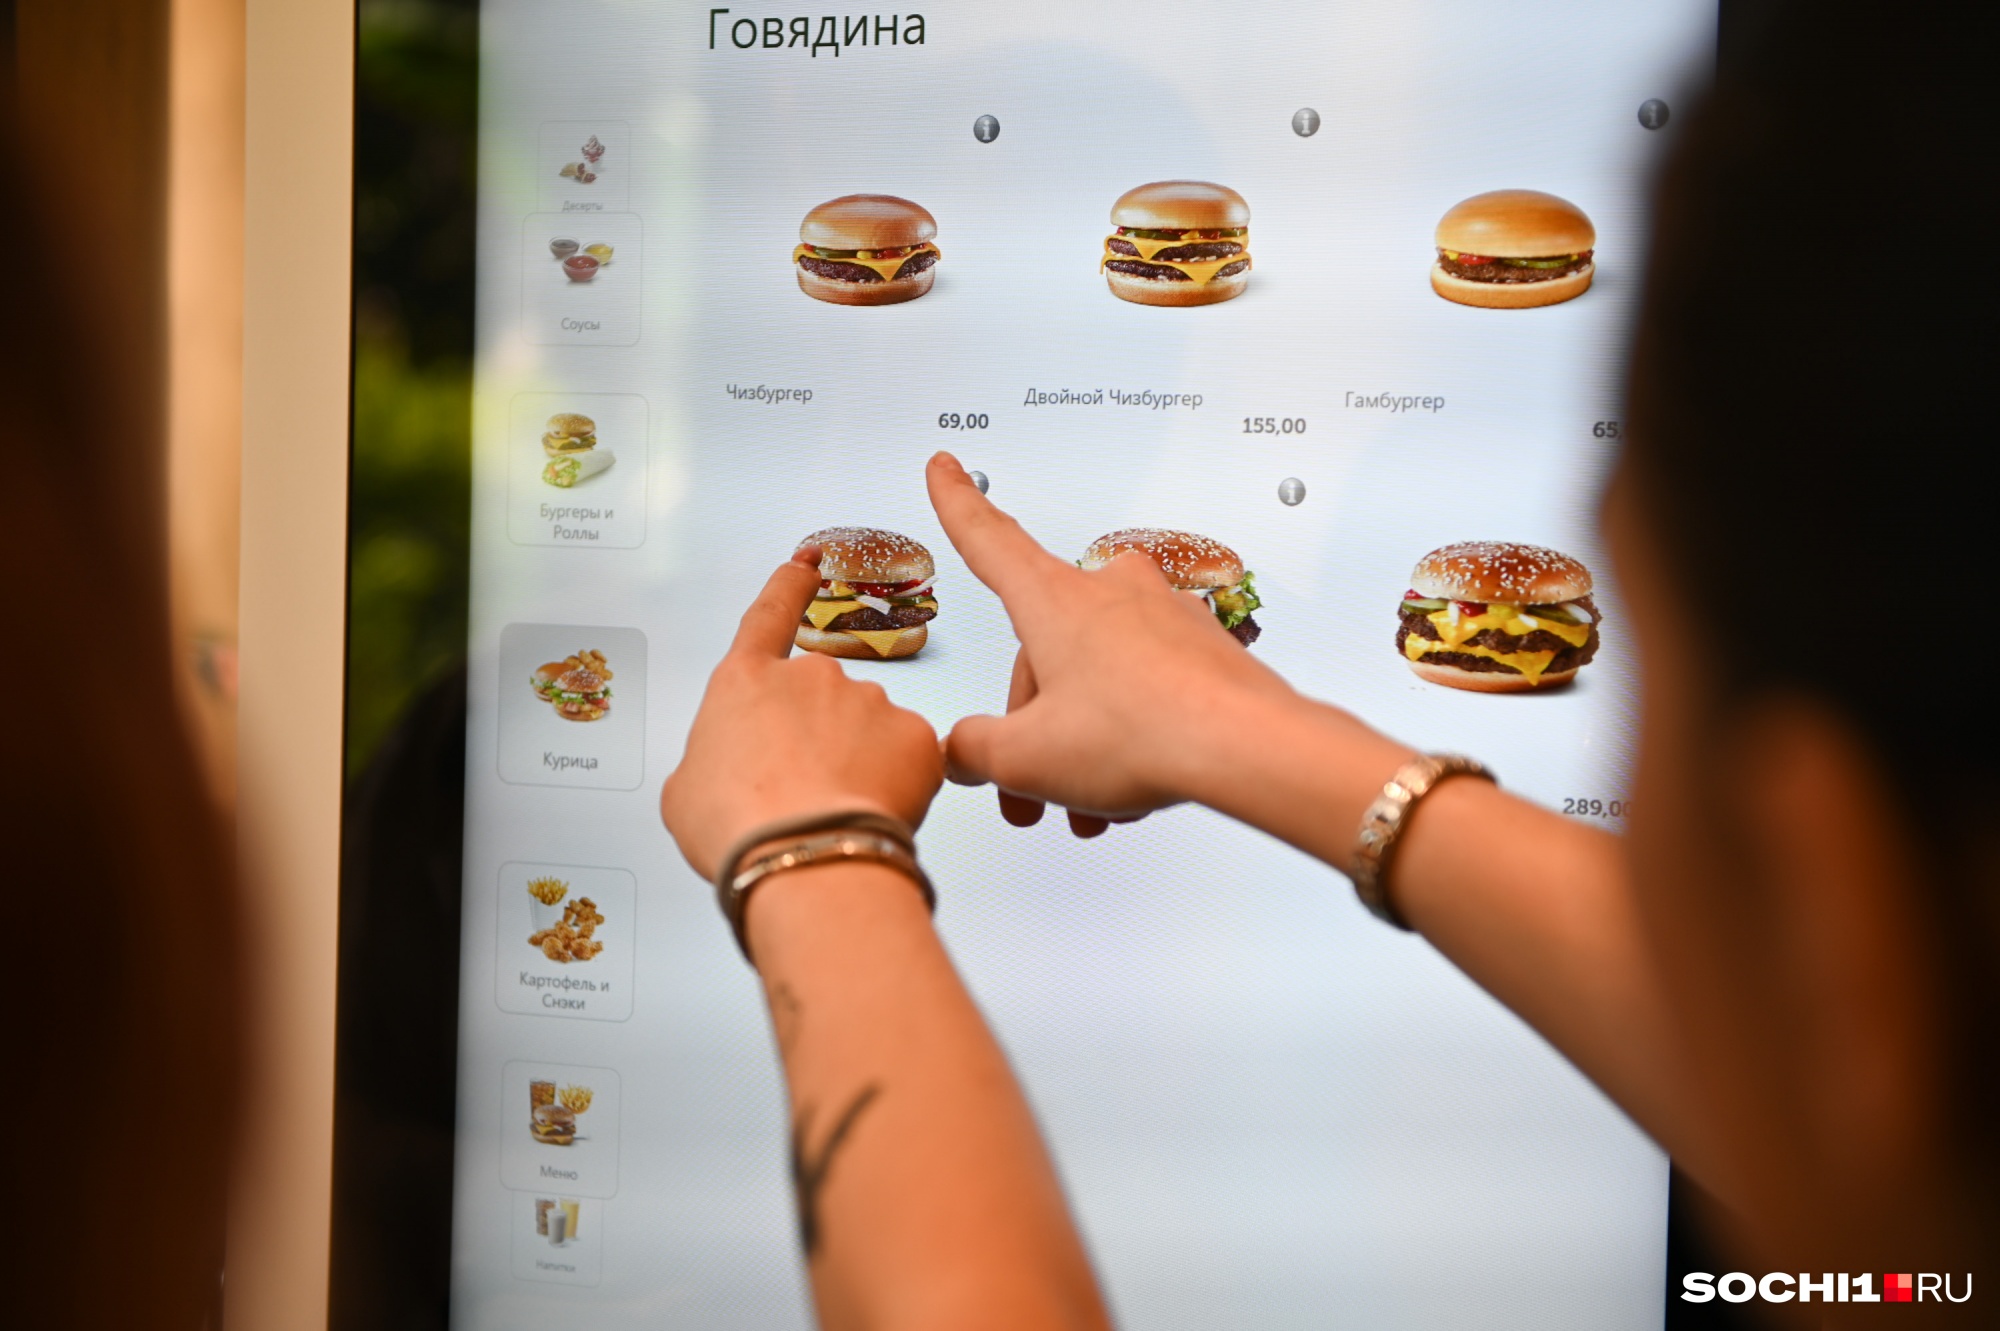 Все бонусы, накопленные в McDonald's, можно использовать в новой сети